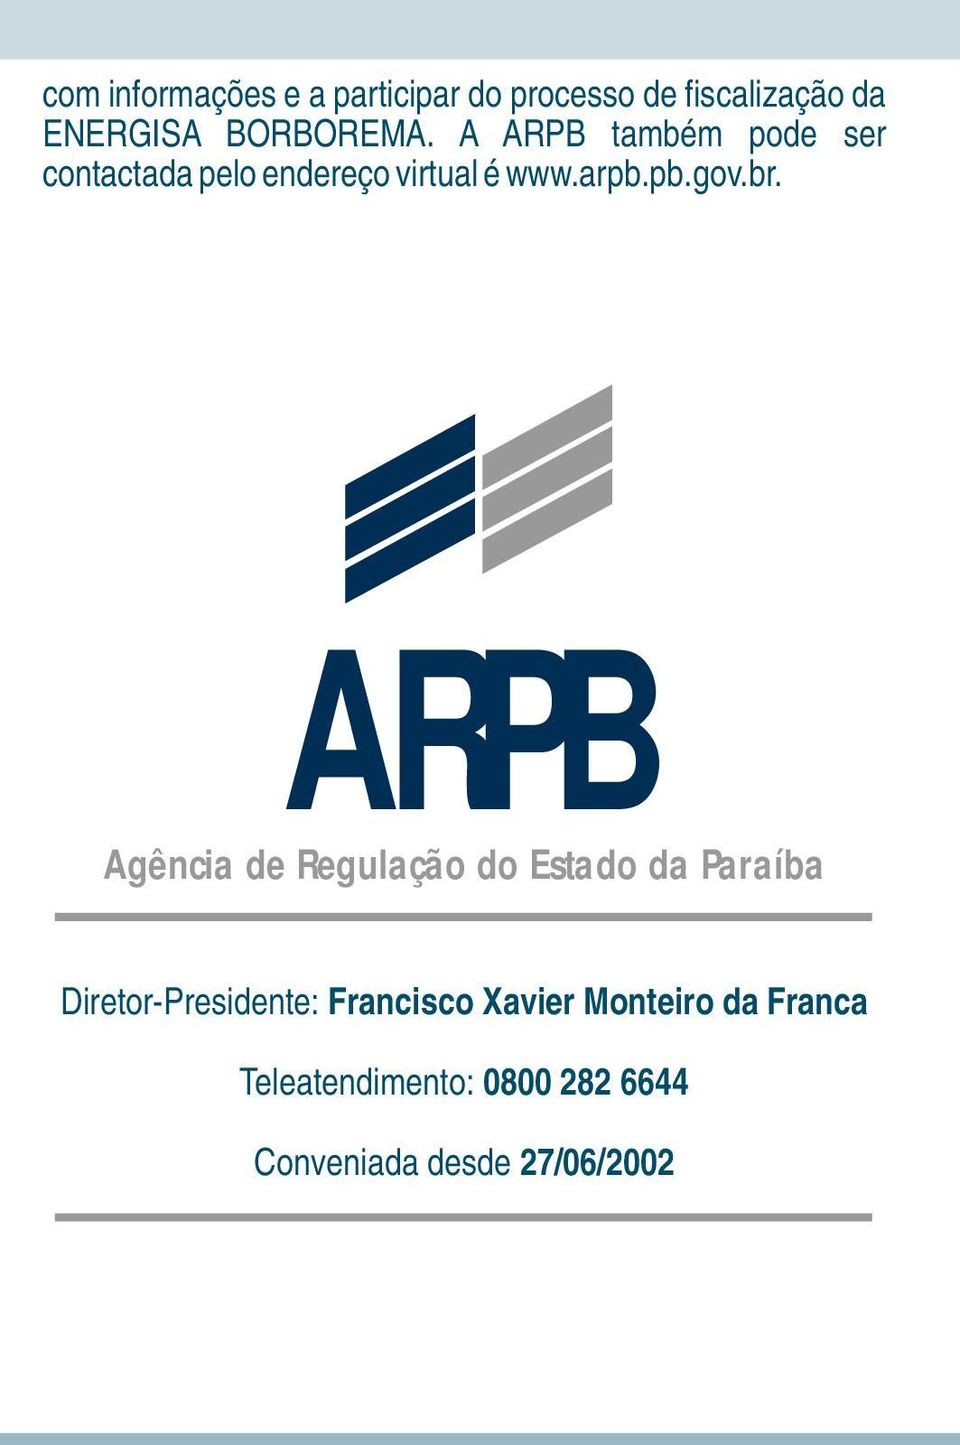 ARPB Agência de Regulação do Estado da Paraíba Diretor-Presidente: Francisco